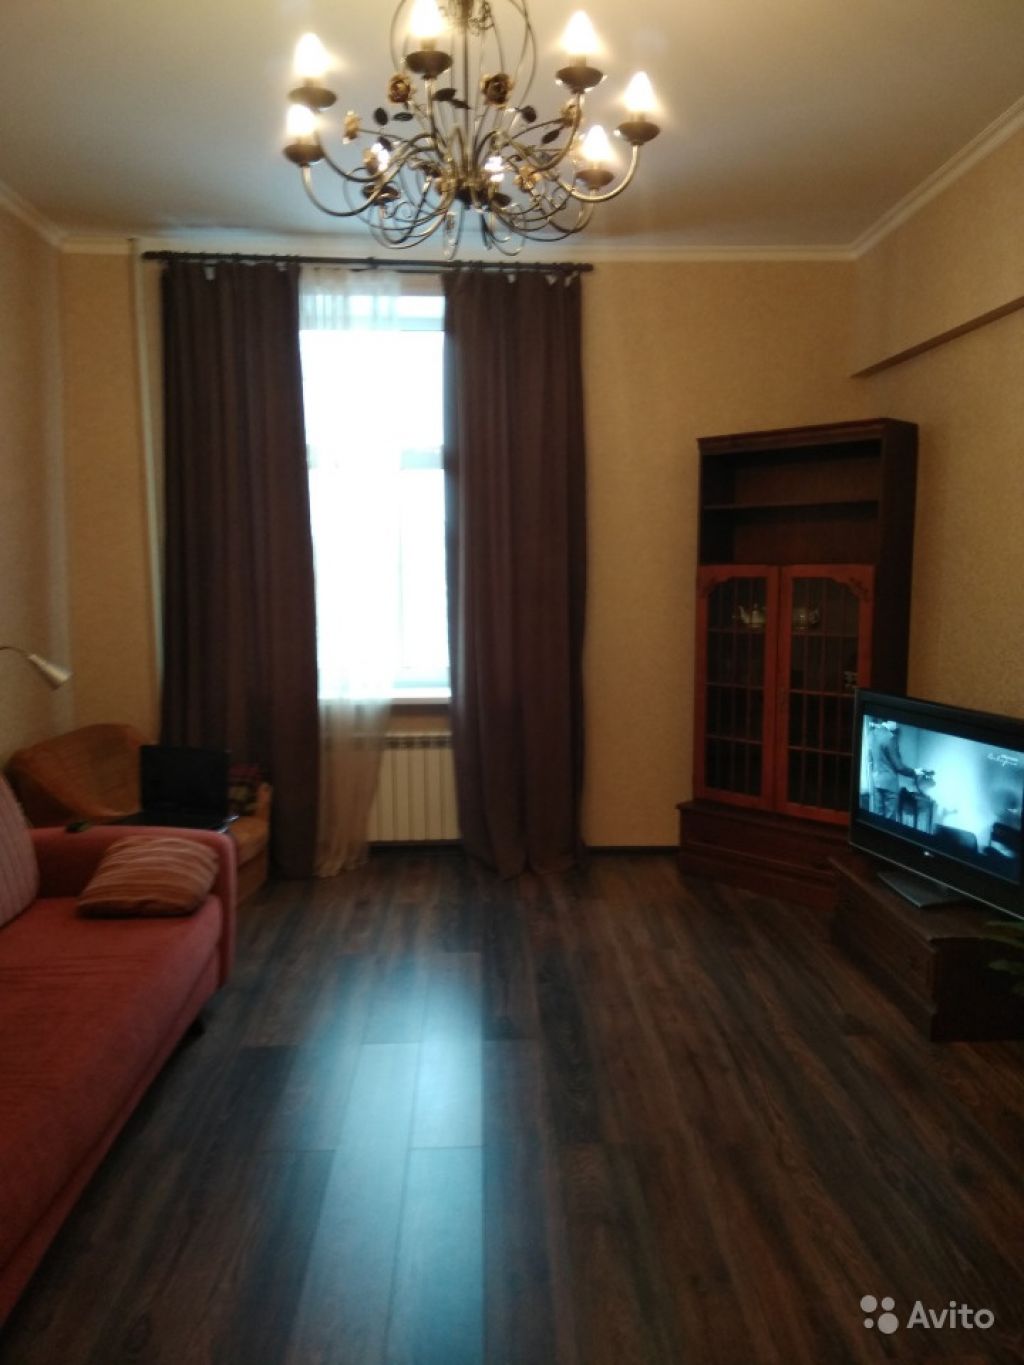 Продам квартиру 2-к квартира 70 м² на 7 этаже 8-этажного кирпичного дома в Москве. Фото 1